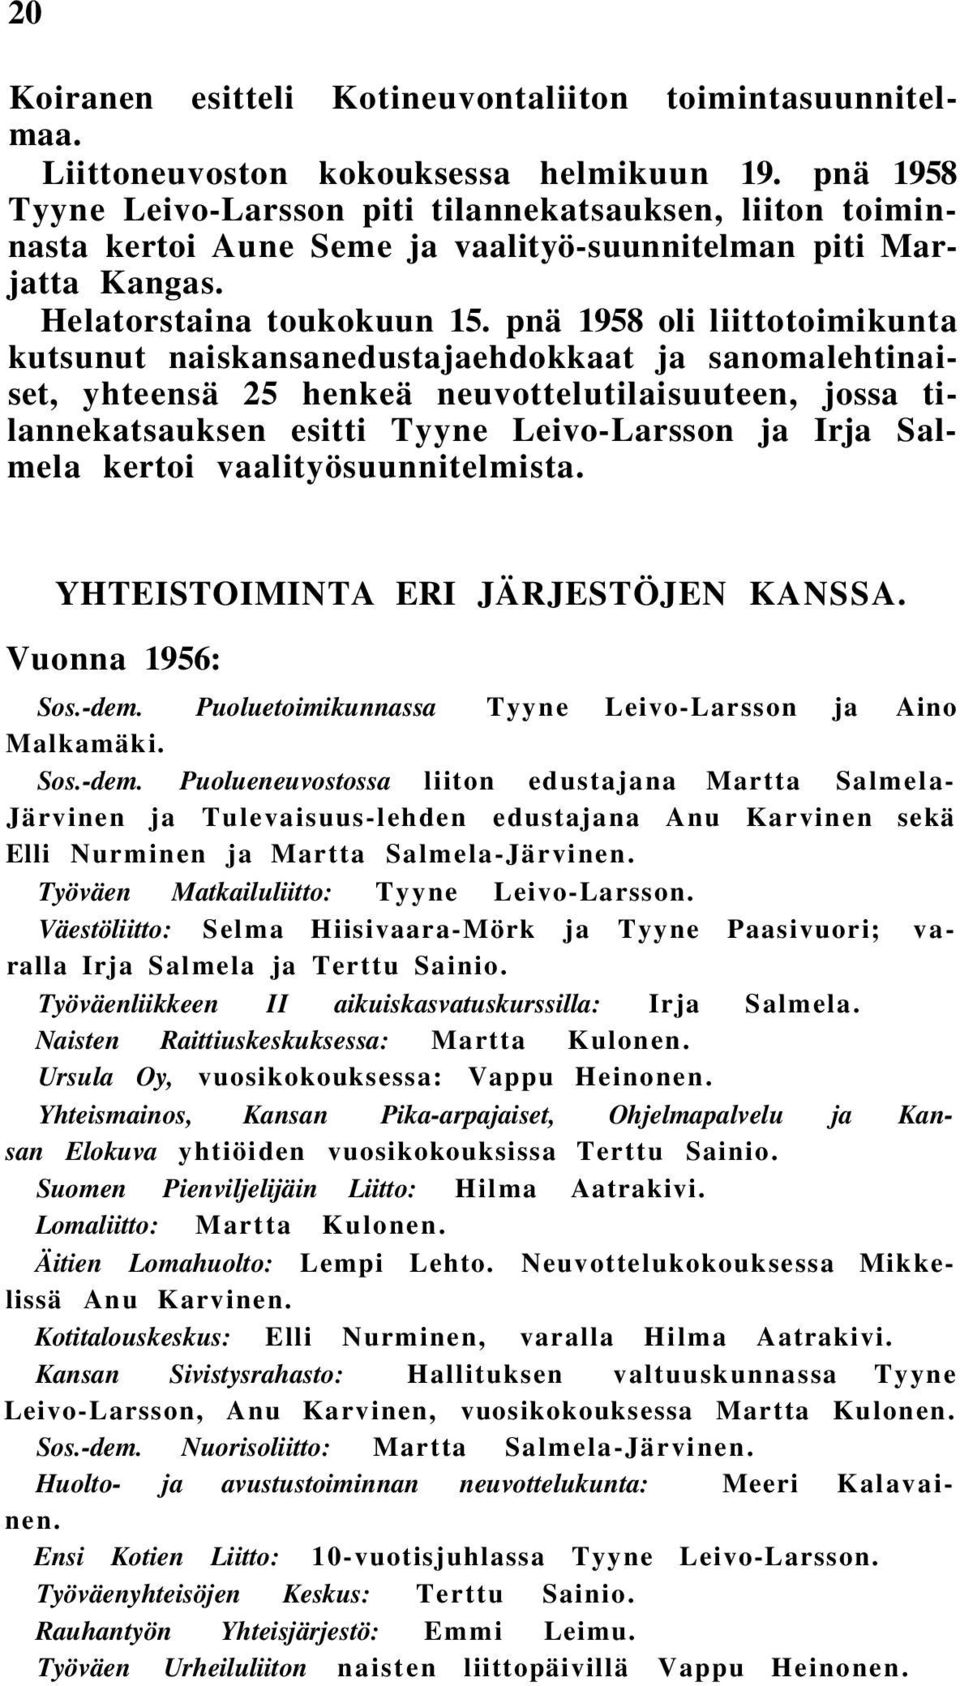 pnä 1958 oli liittotoimikunta kutsunut naiskansanedustajaehdokkaat ja sanomalehtinaiset, yhteensä 25 henkeä neuvottelutilaisuuteen, jossa tilannekatsauksen esitti Tyyne Leivo-Larsson ja Irja Salmela